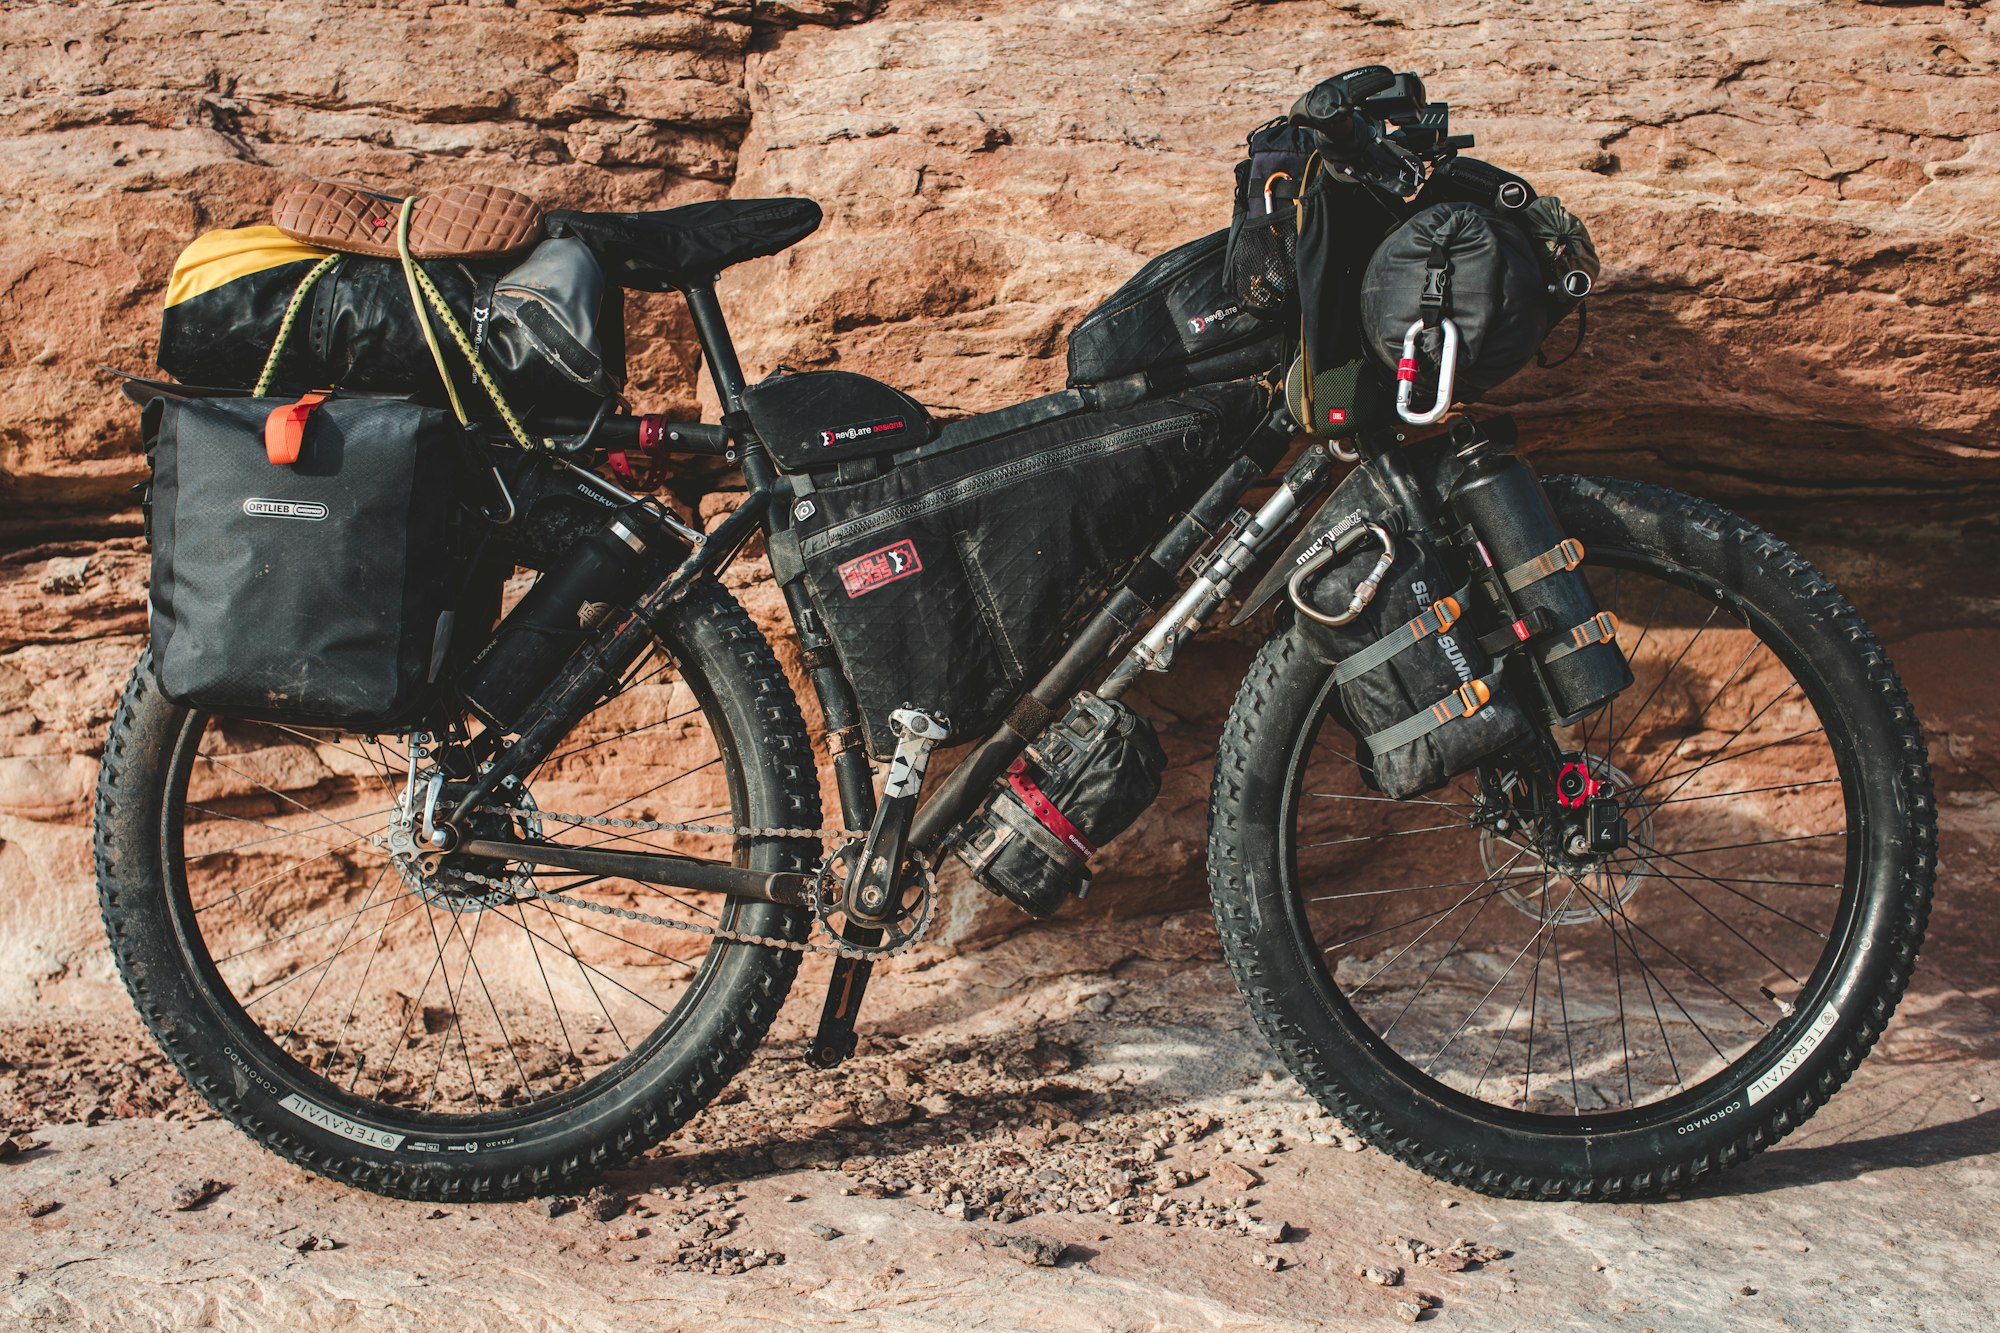 La tente parfaite pour ton aventure de bikepacking | buycycle